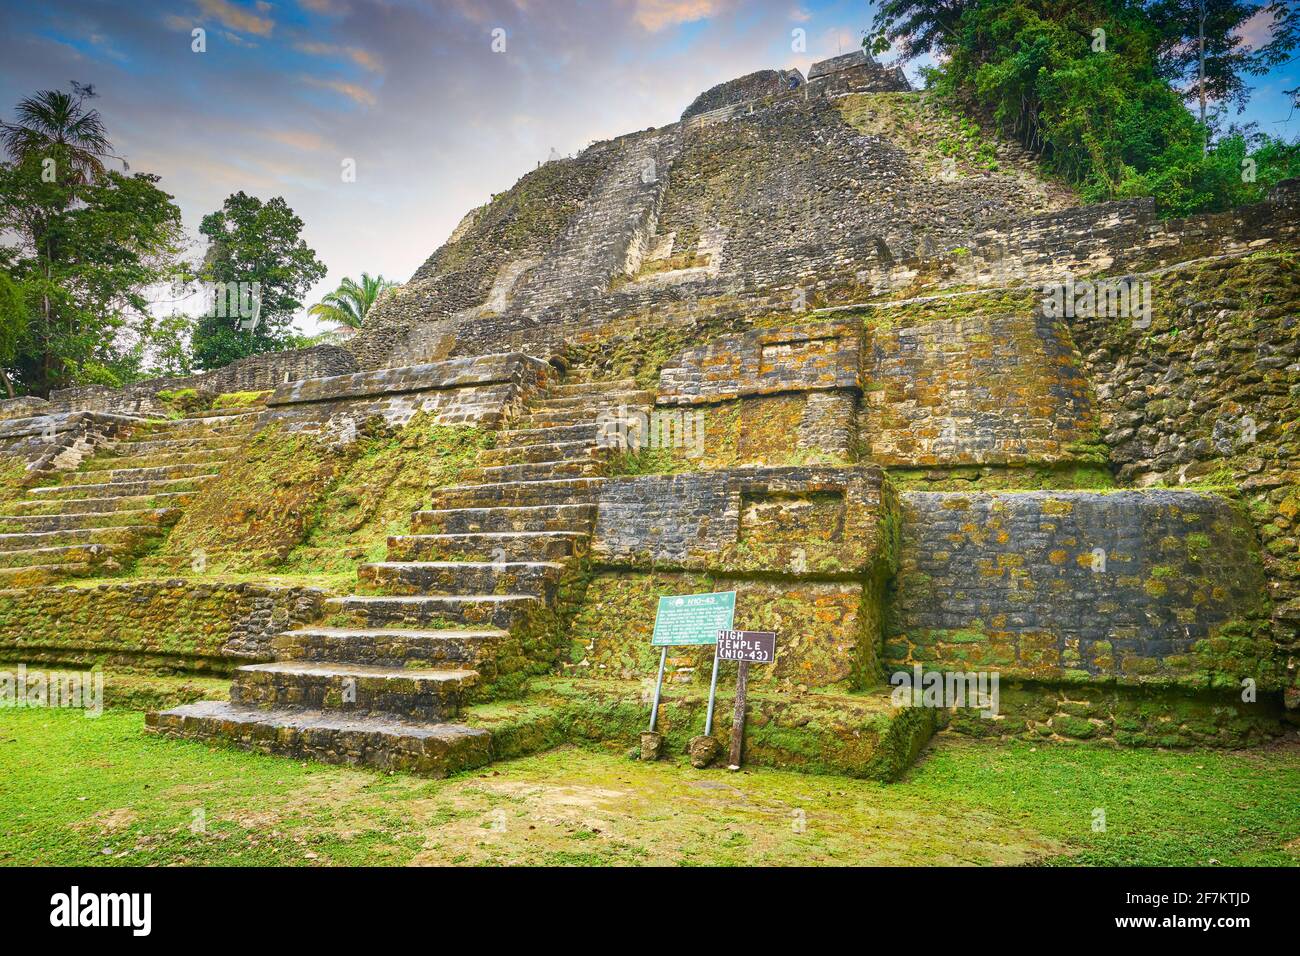 Haut Temple (le plus haut temple de Lamanai), ruines de l'ancien tMaya, Lamanai, Belize Banque D'Images